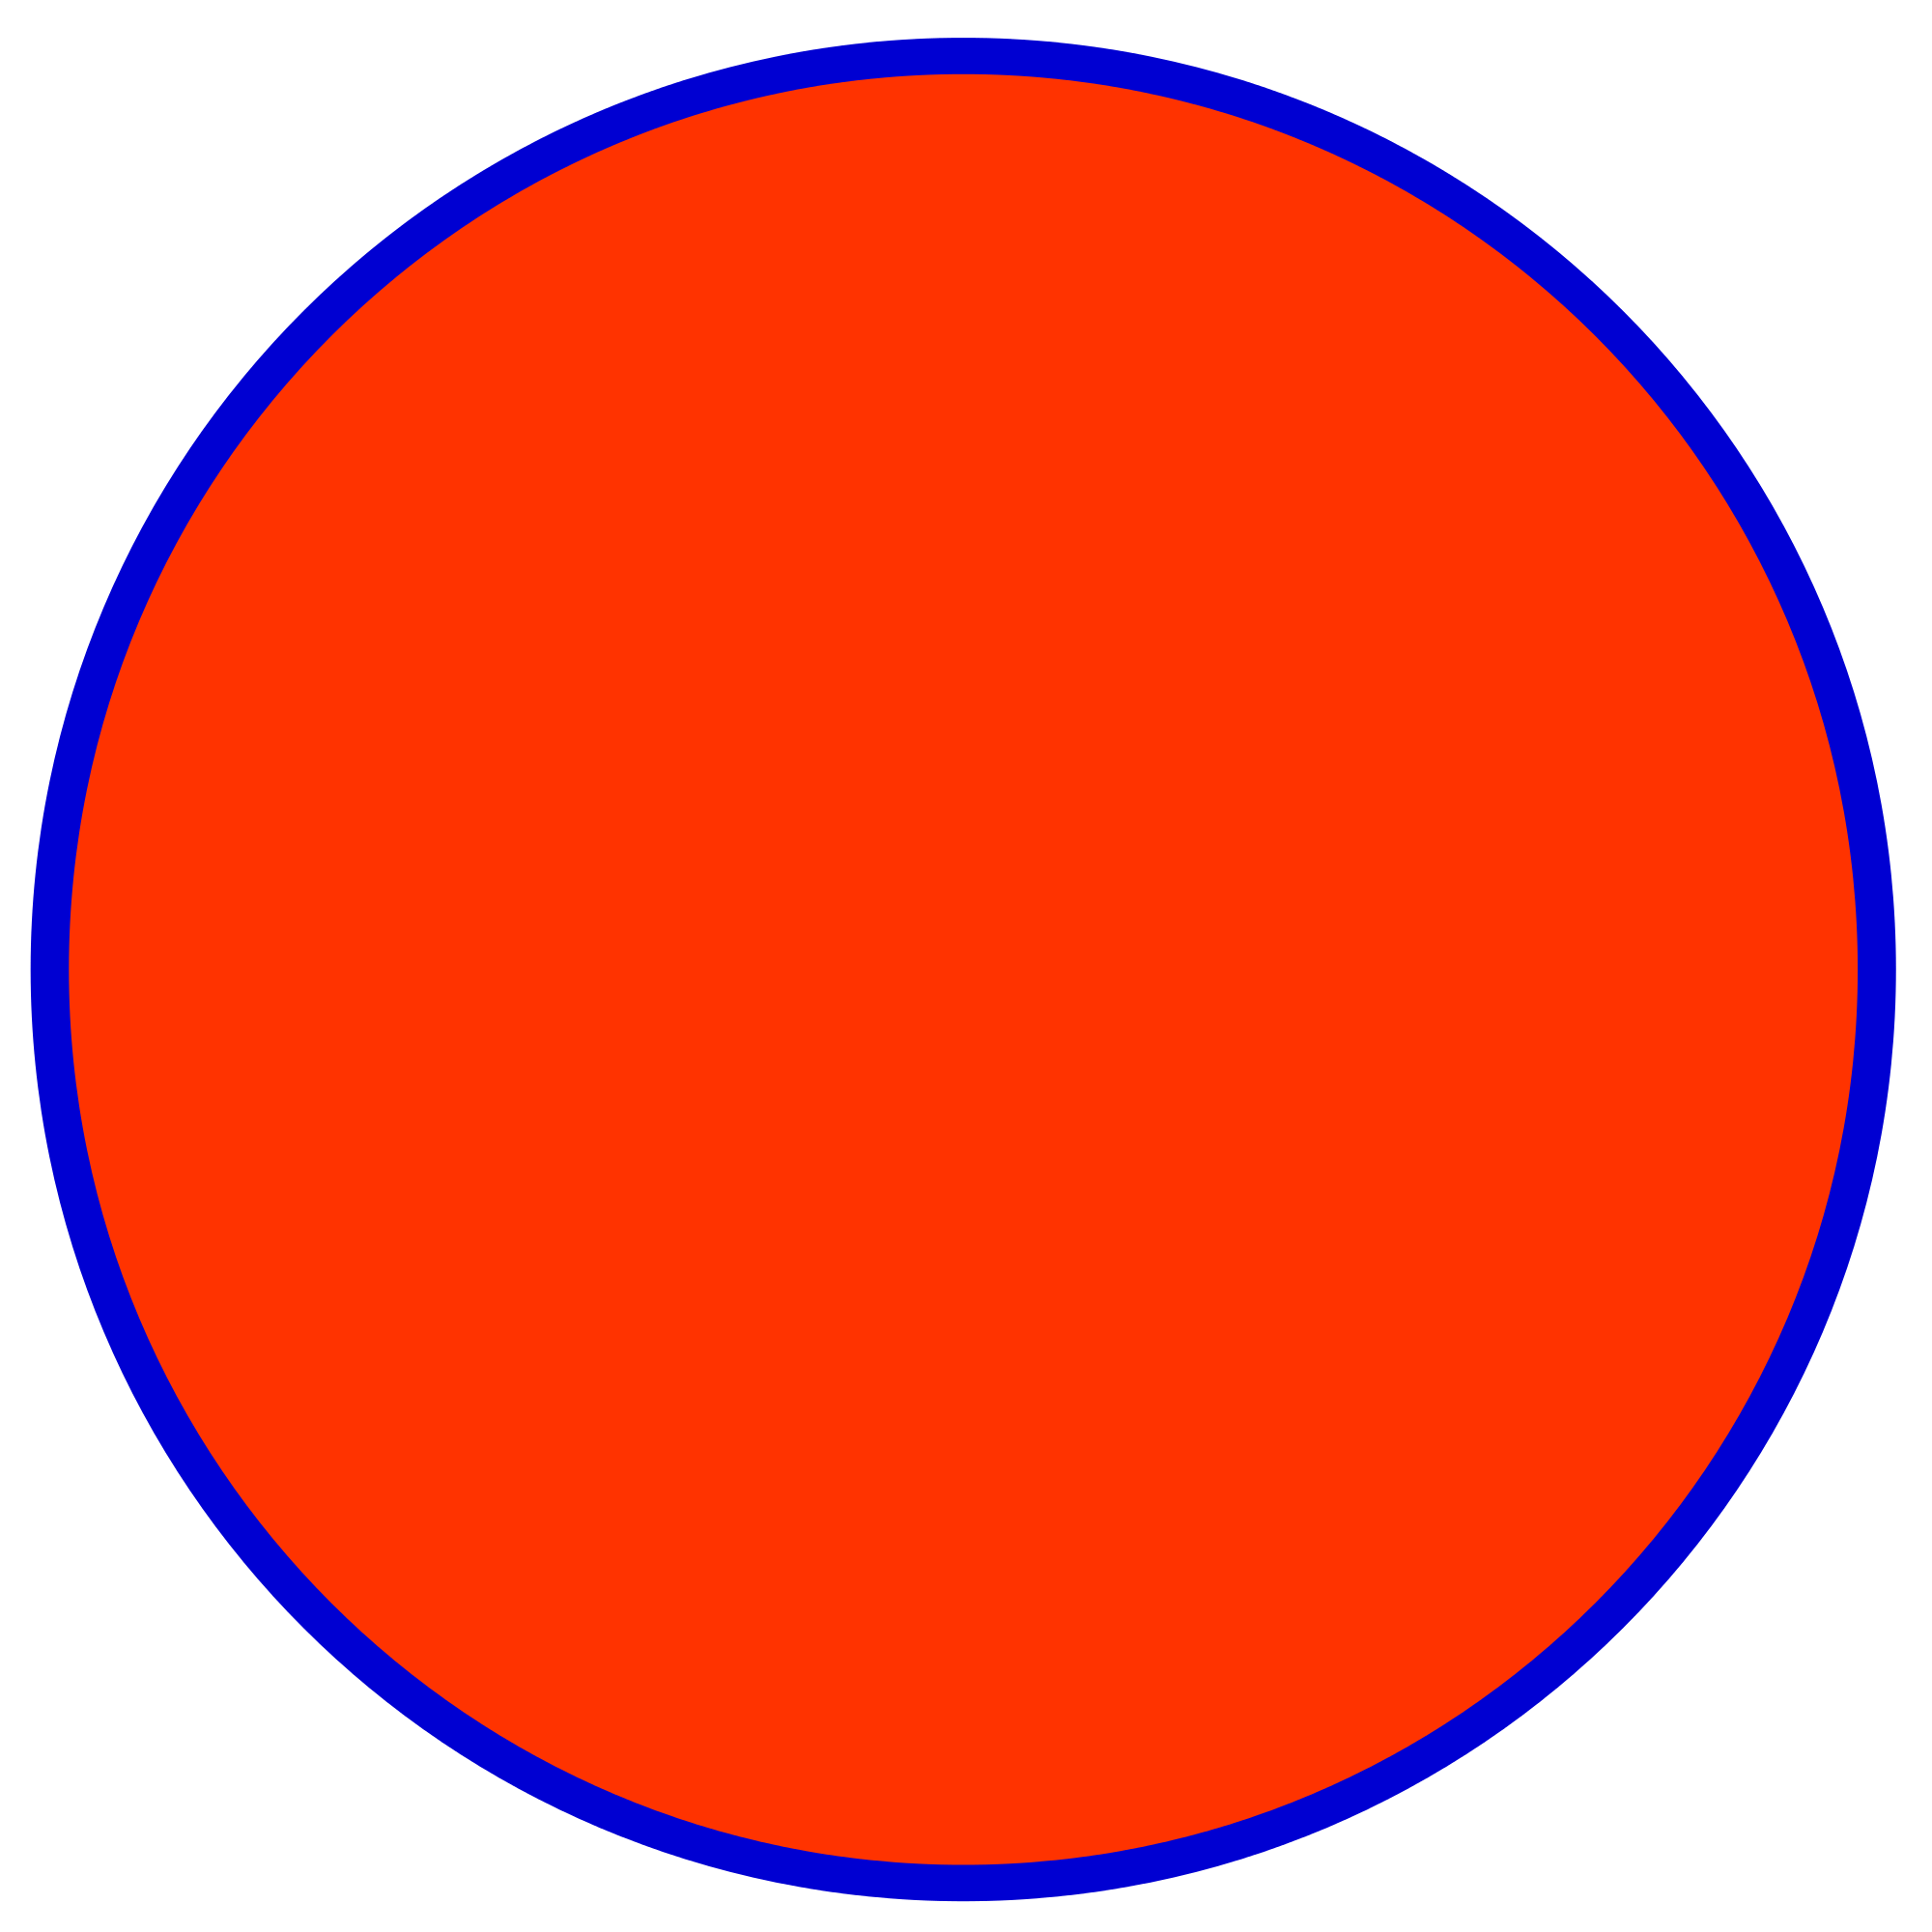 Red-Orange and Blue Circle Logo - Red blue circle.svg